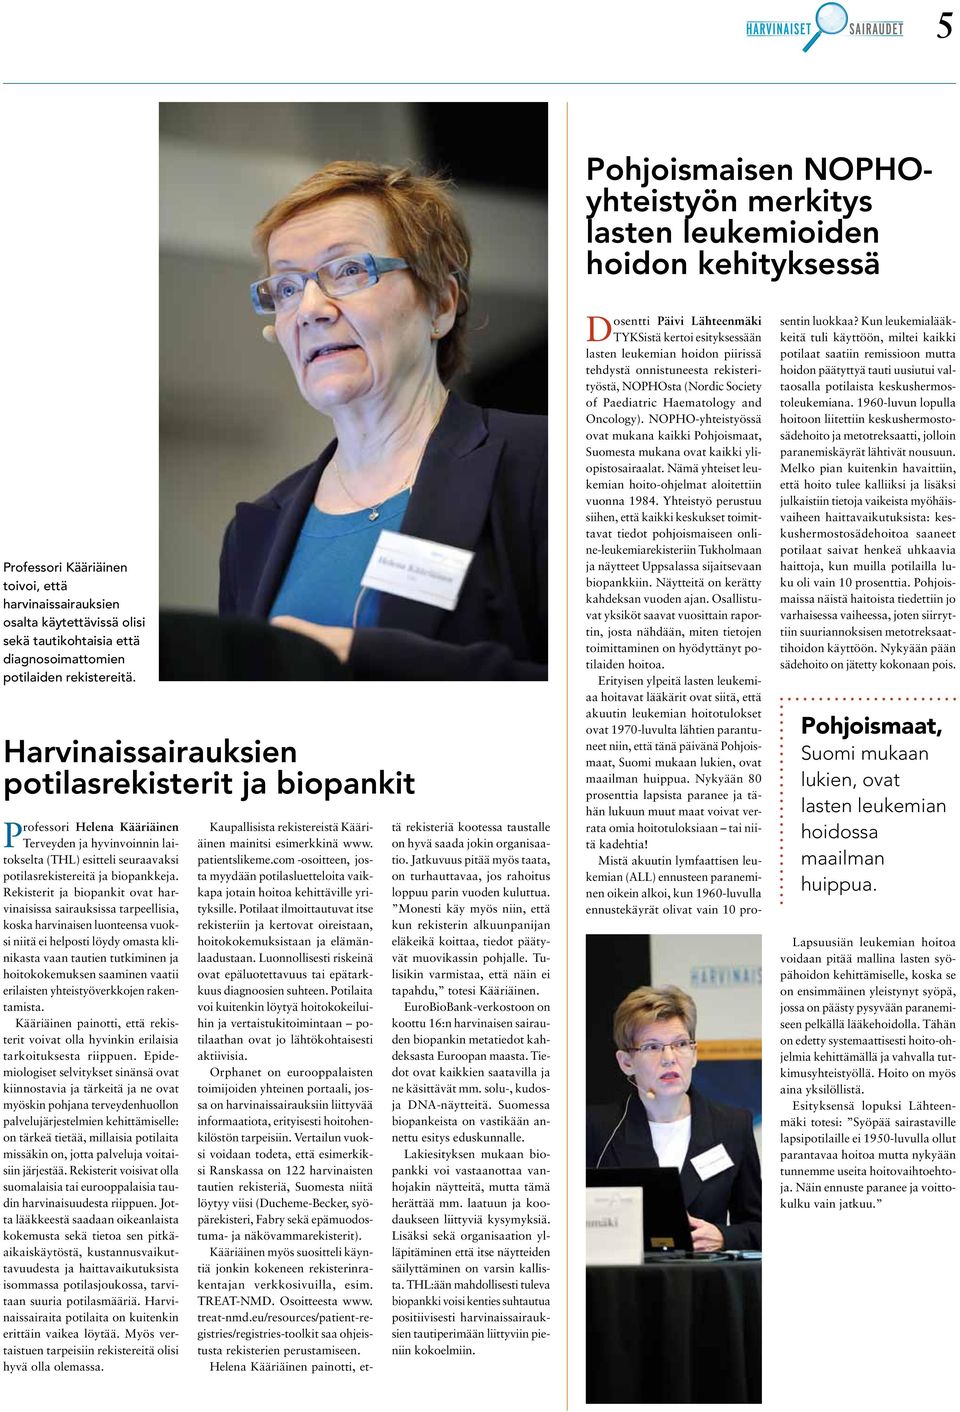 Harvinaissairauksien potilasrekisterit ja biopankit Professori Helena Kääriäinen Terveyden ja hyvinvoinnin laitokselta (THL) esitteli seuraavaksi potilasrekistereitä ja biopankkeja.